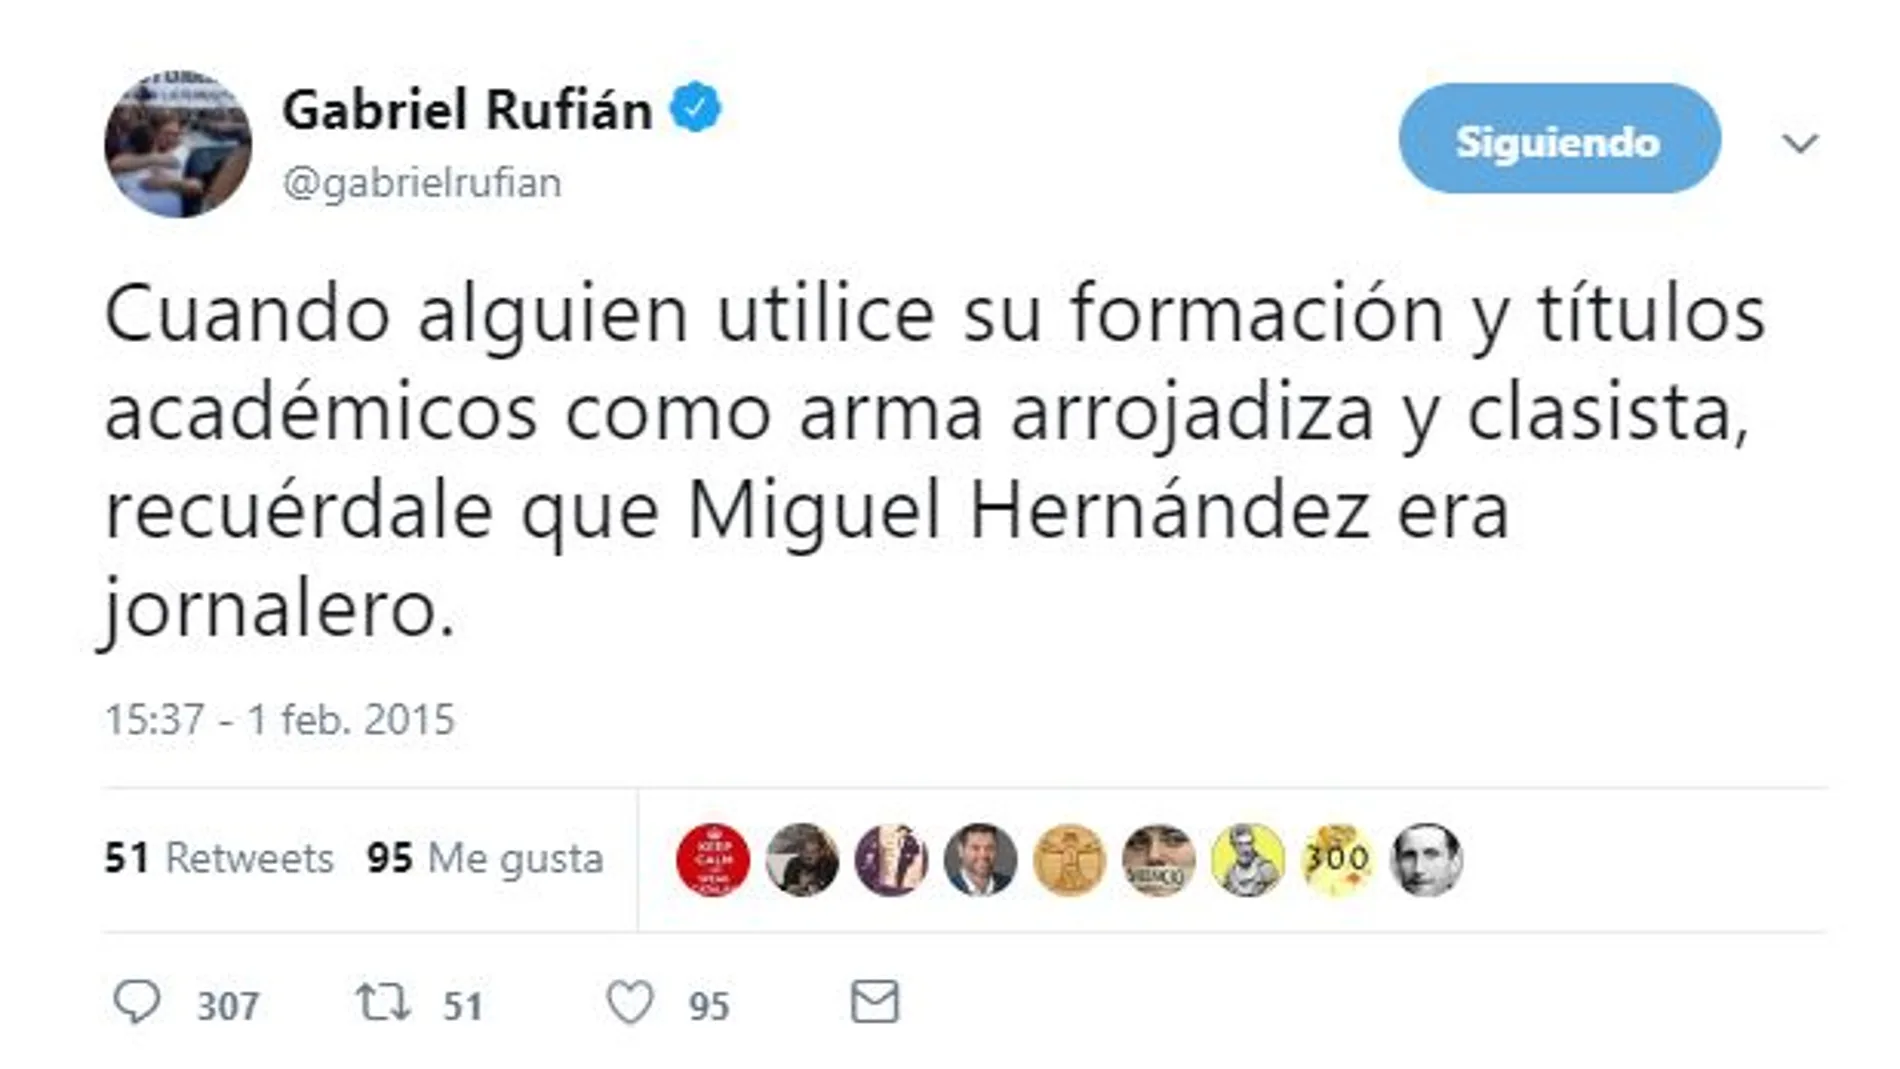 Zasca de Twitter a Rufián a costa de Miguel Hernández